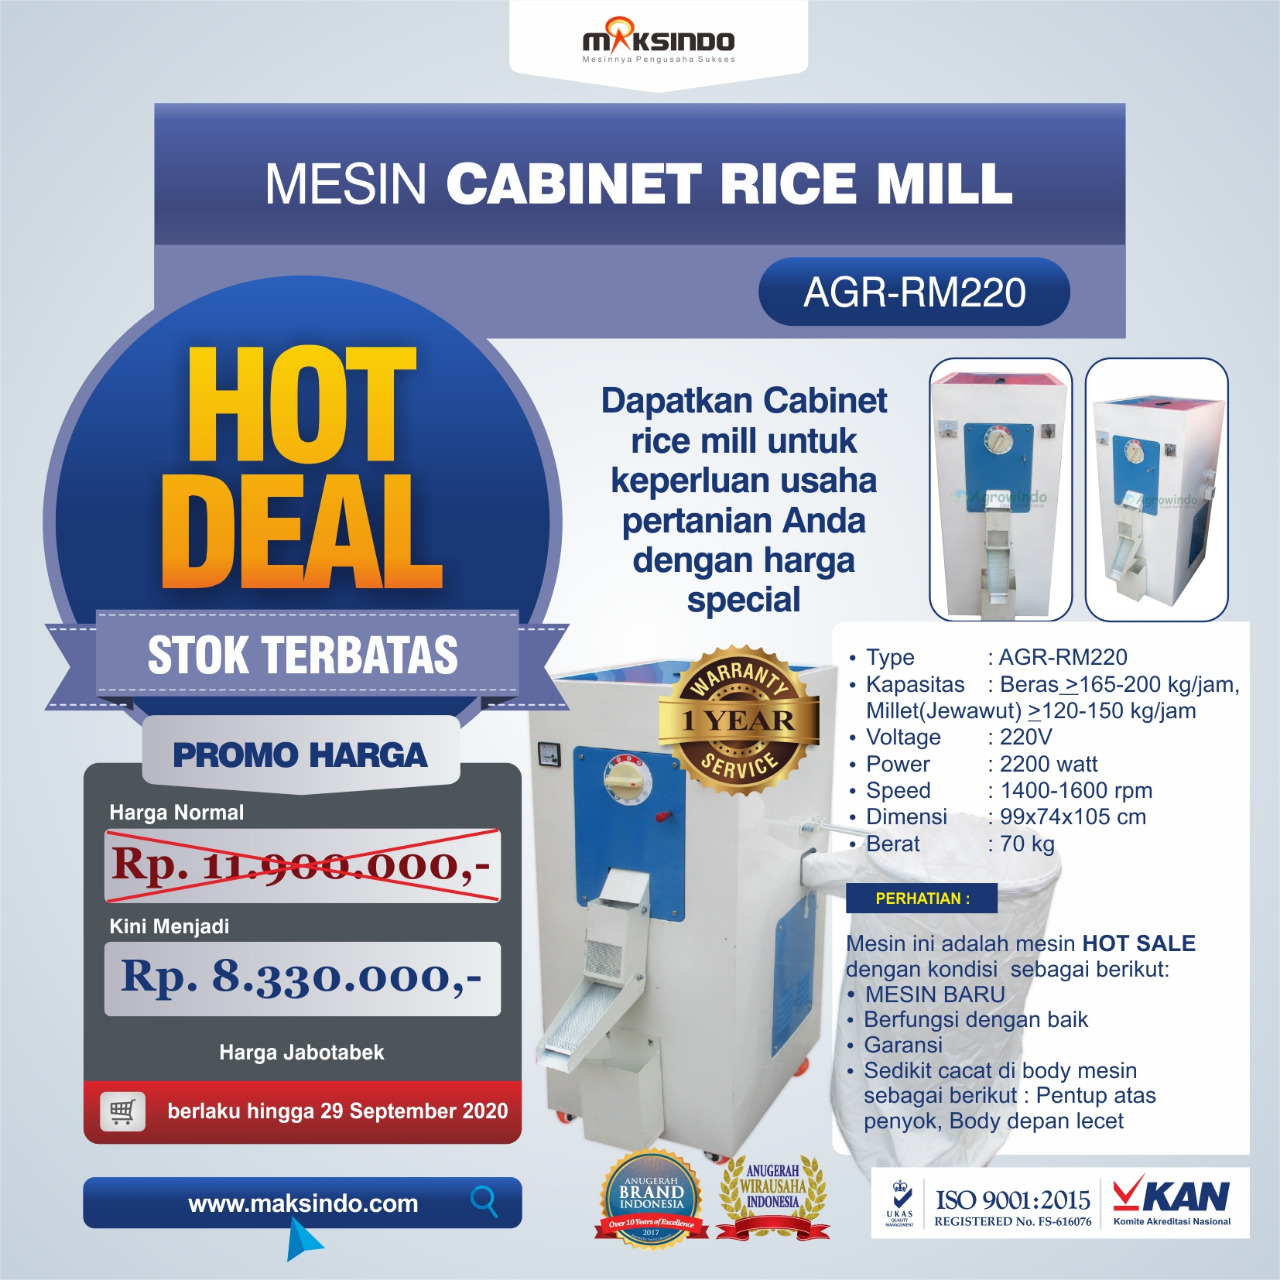 Jual Mesin Cabinet Rice Mill AGR-RM220 Banjarmasin